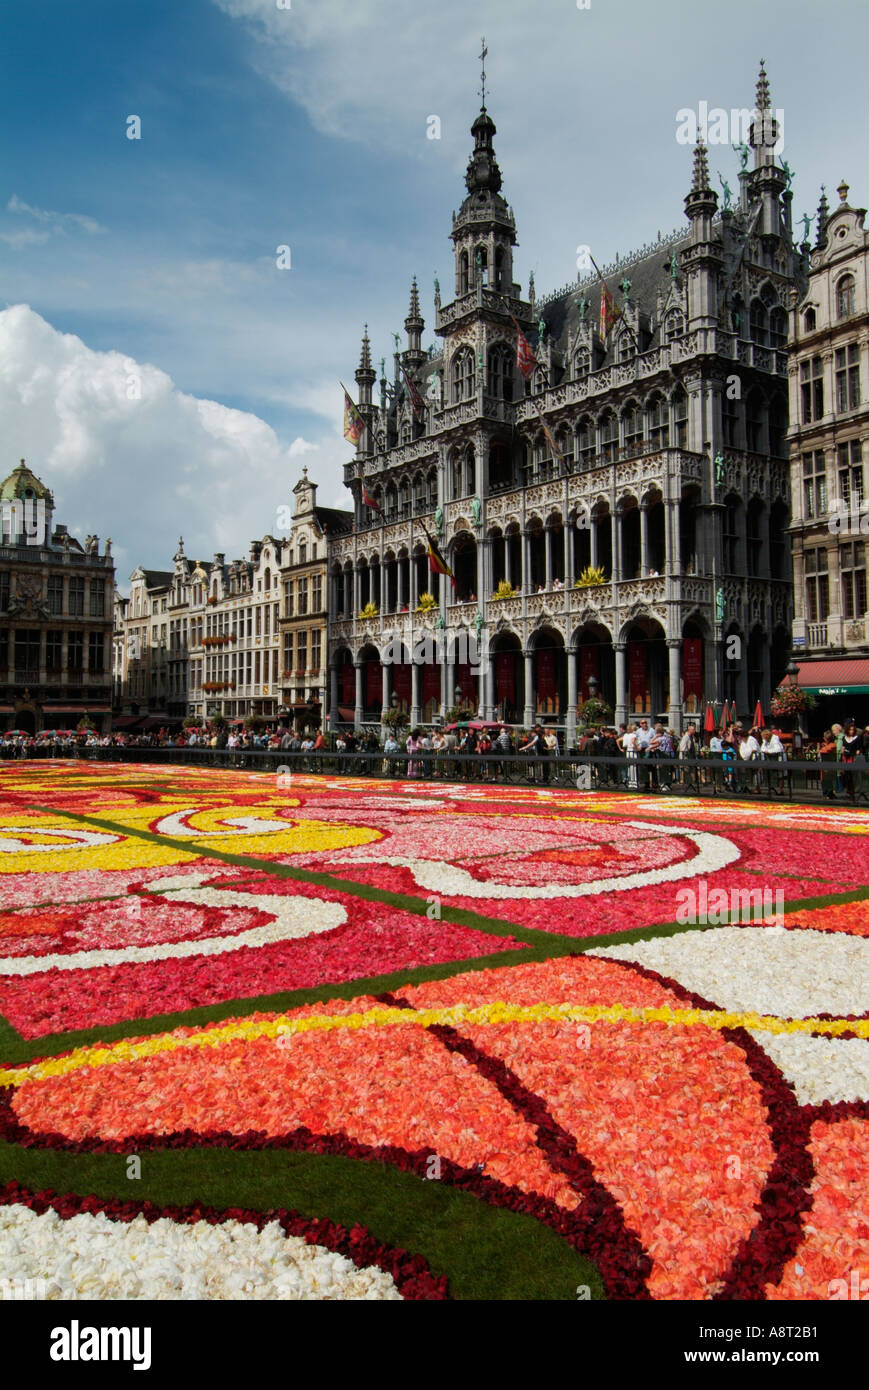 Grand Ort Brüssel zeigt das Museum und die 2004 Blume Teppich Art-deco-Thema Brüssel Belgien EU Europa eye35.com Stockfoto